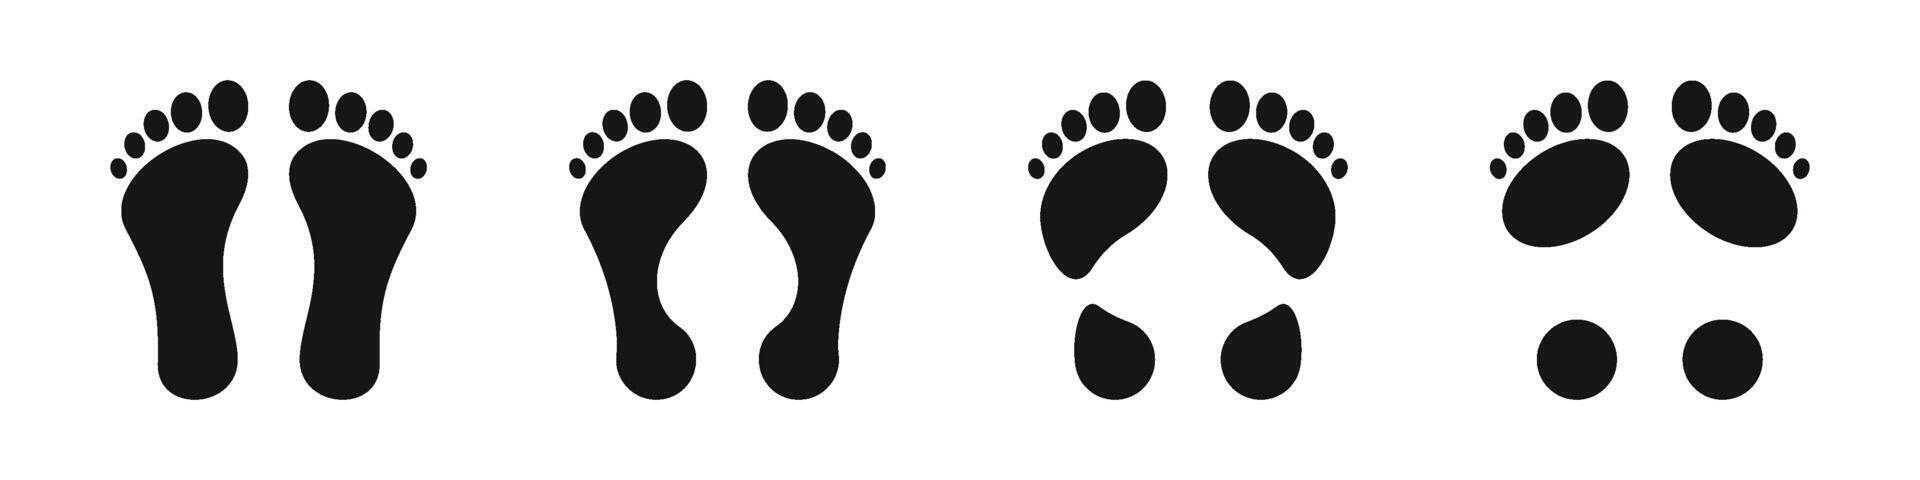 voetafdruk. verschillend menselijk voetafdrukken. menselijk voetafdrukken. vector